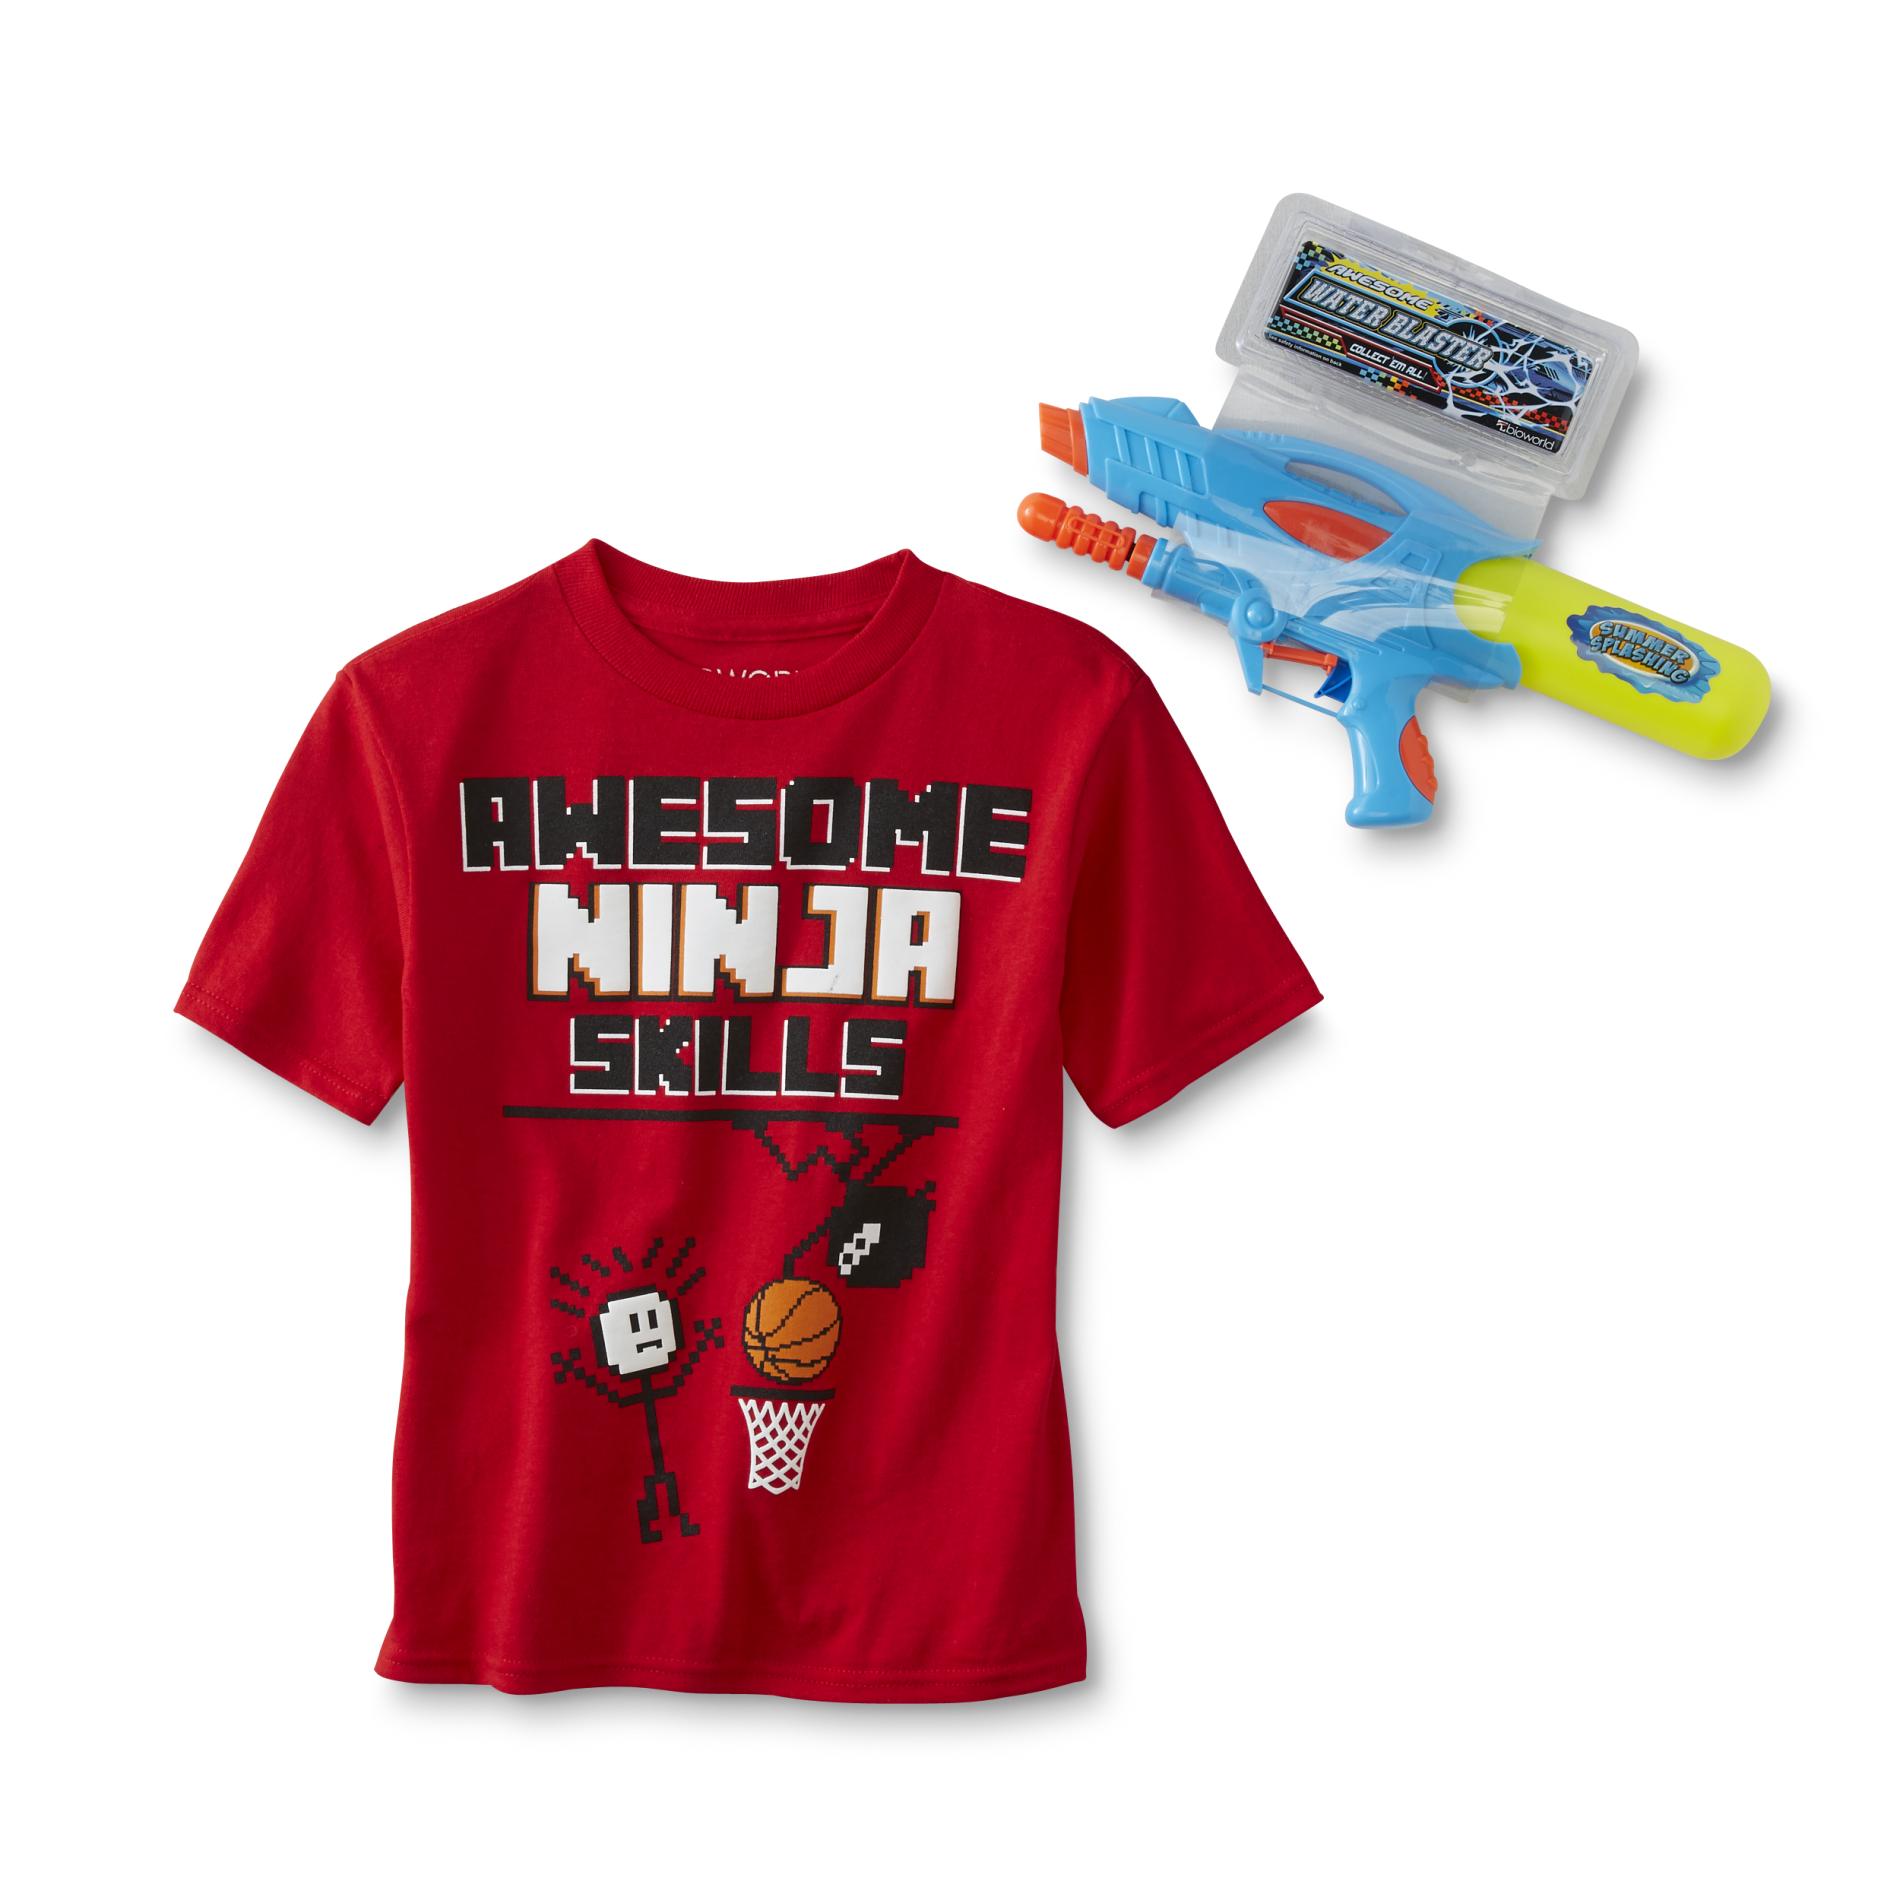 Boys' Graphic T-Shirt & Toy - Ninja Basketball